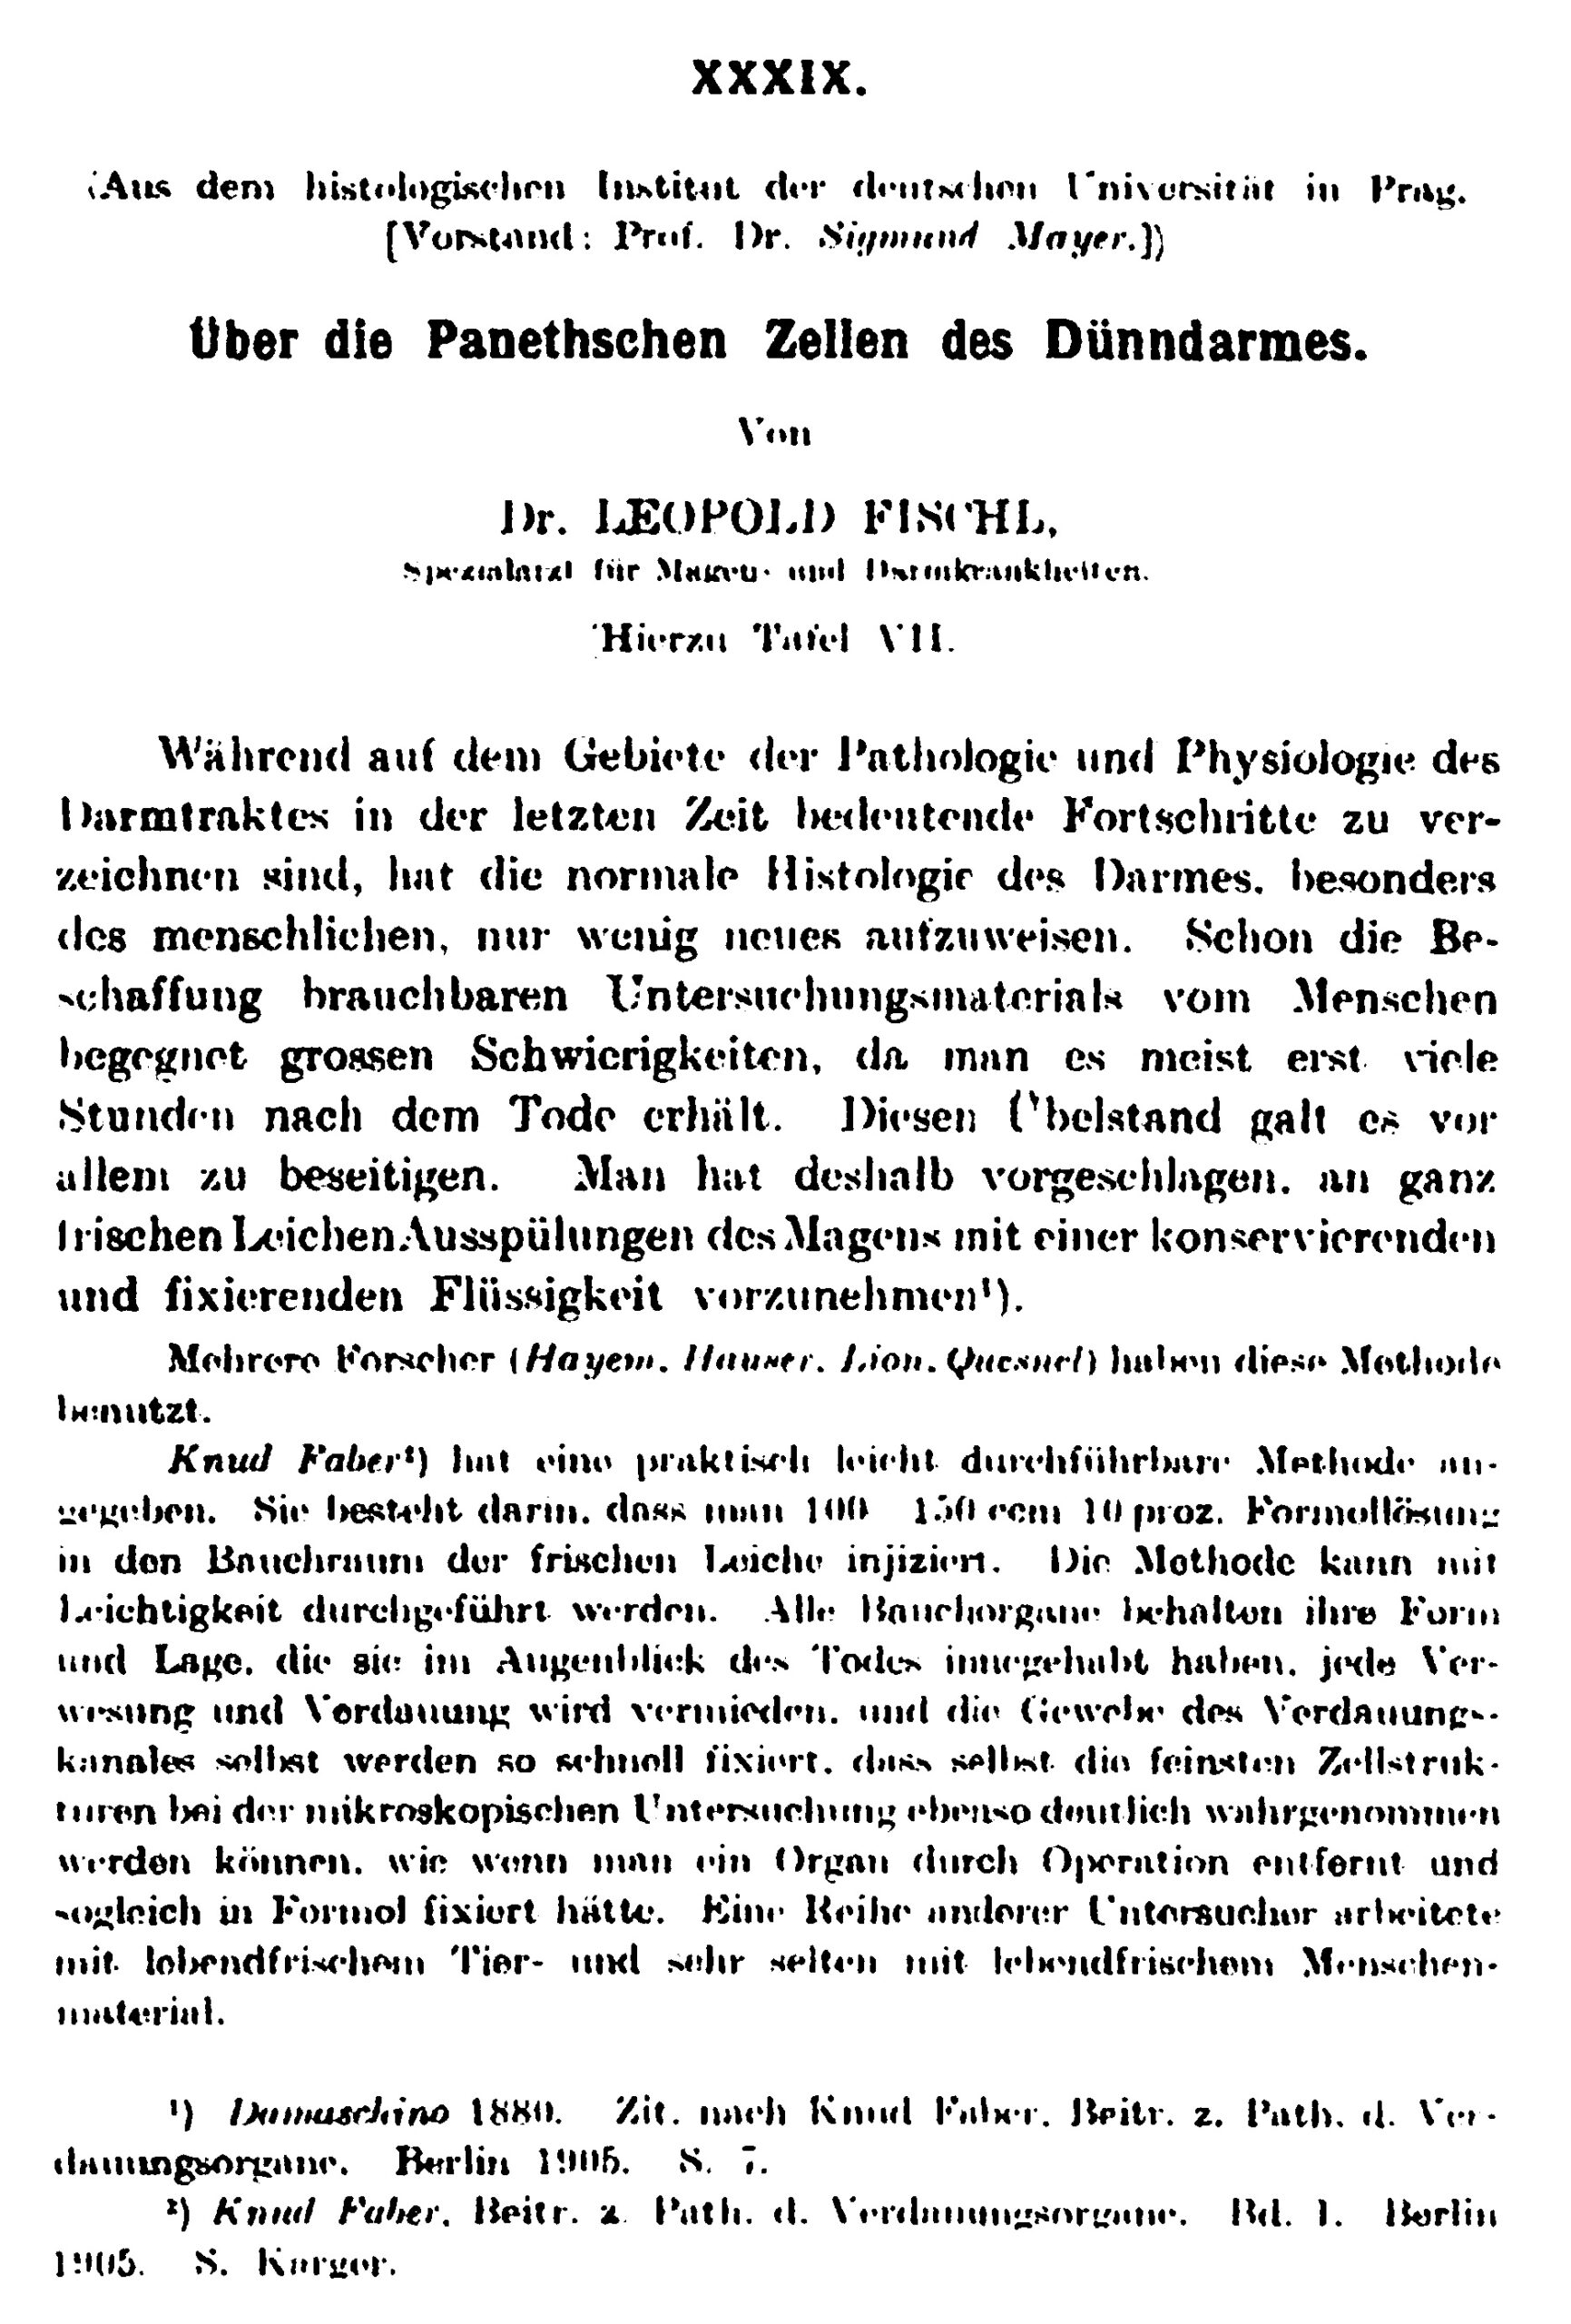 Publikation Panethsche Zellen, Archiv für Verdauungskrankheiten, 1910